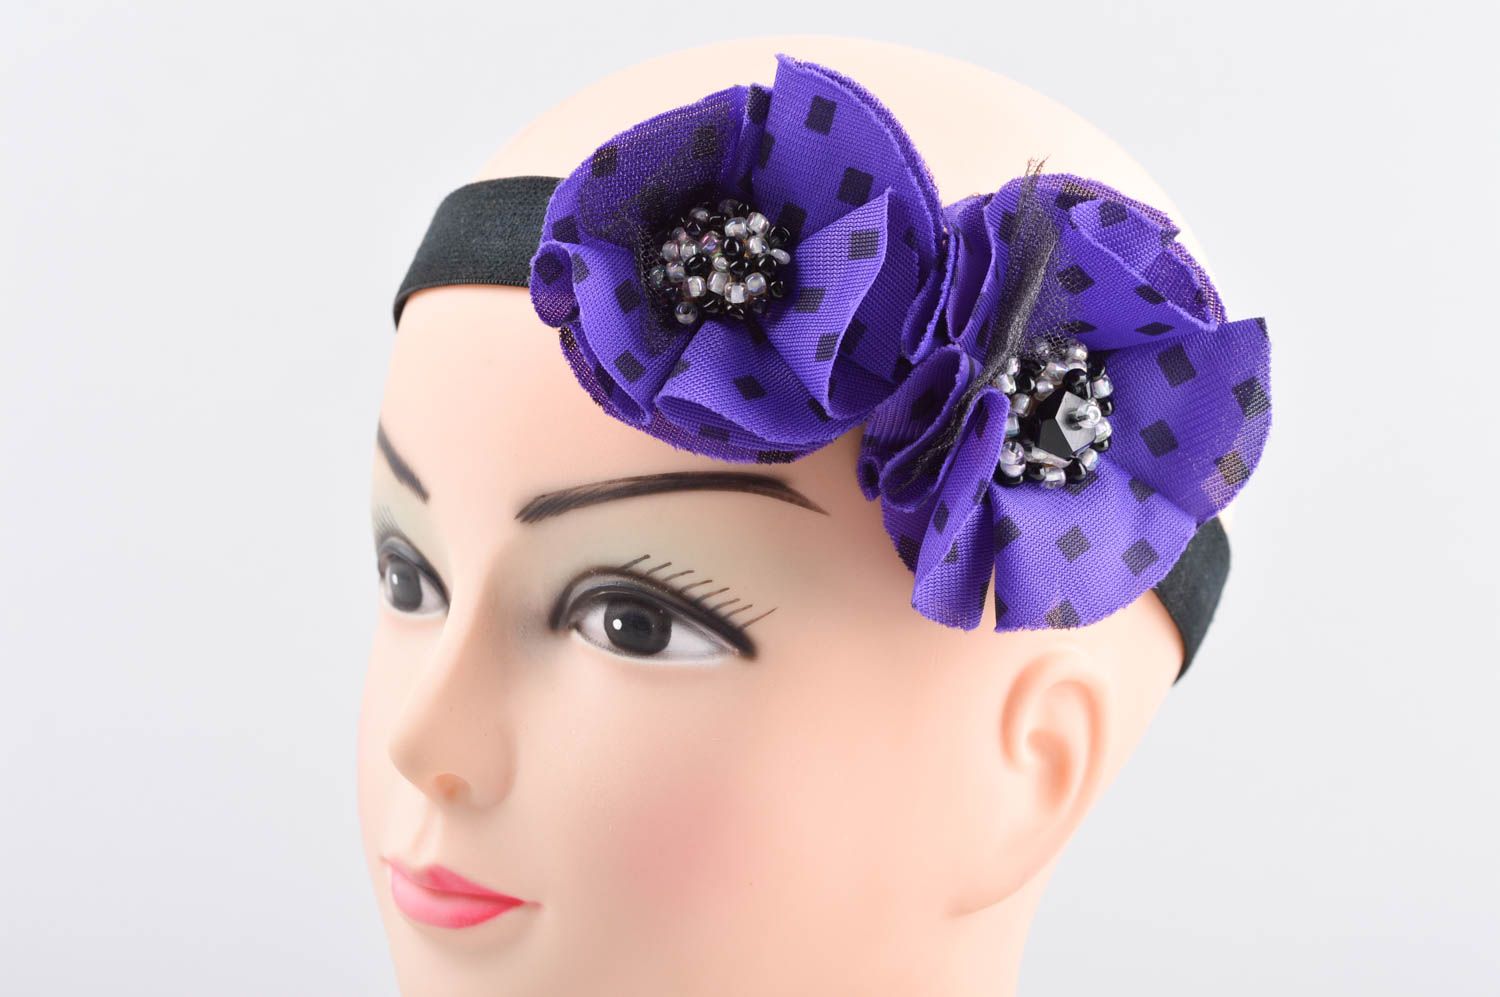 Аксессуар для волос хэнд мэйд повязка на голову аксессуар на голову фиолетовый фото 1